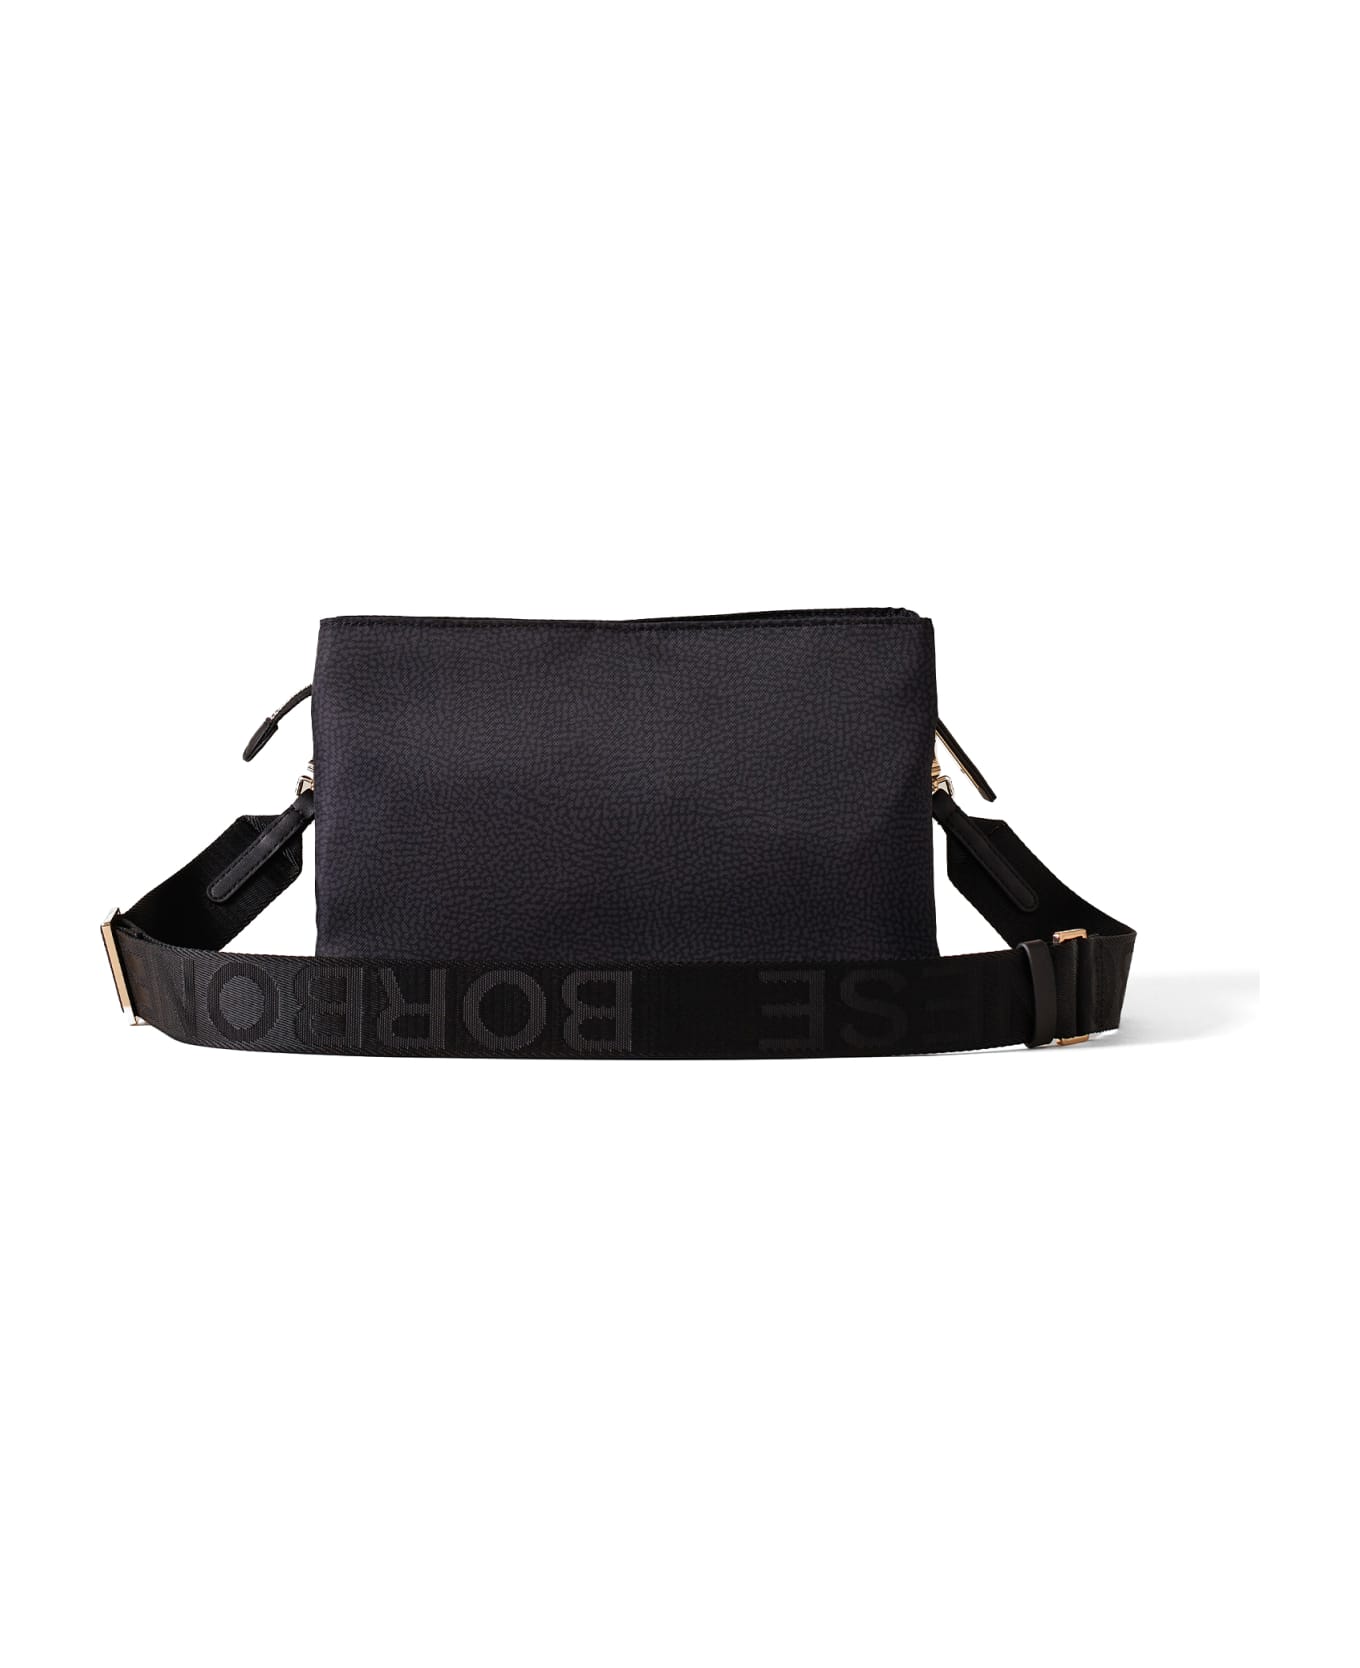 Borbonese Small Black Shoulder Bag - DARK BLACK